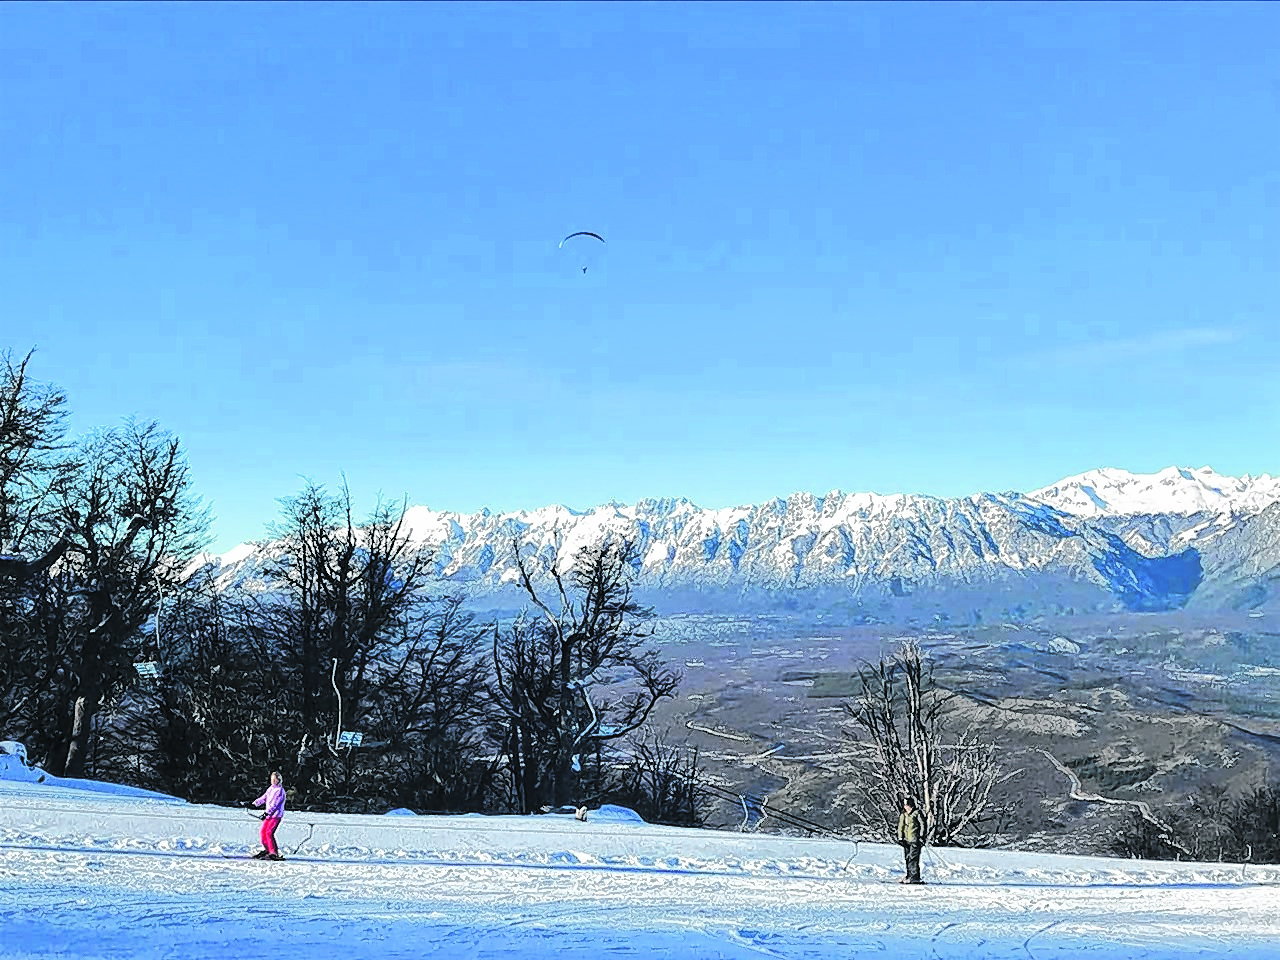 La empresa también maneja el centro de esquí de El Bolsón, que está en el mismo cerro. Foto: archivo